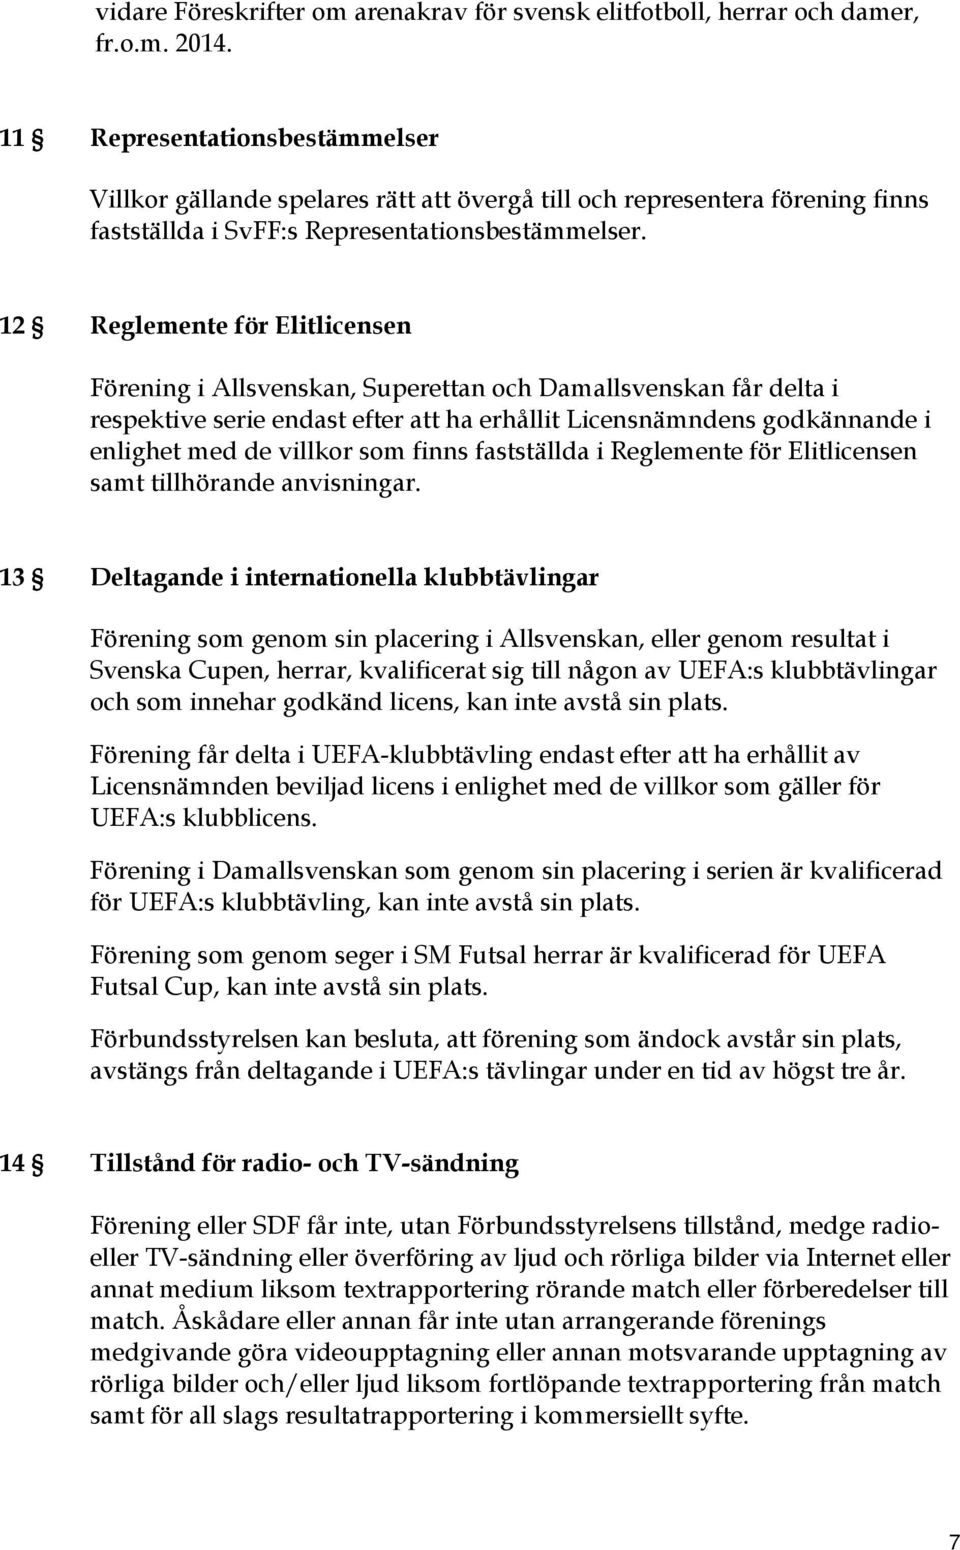 12 Reglemente för Elitlicensen Förening i Allsvenskan, Superettan och Damallsvenskan får delta i respektive serie endast efter att ha erhållit Licensnämndens godkännande i enlighet med de villkor som